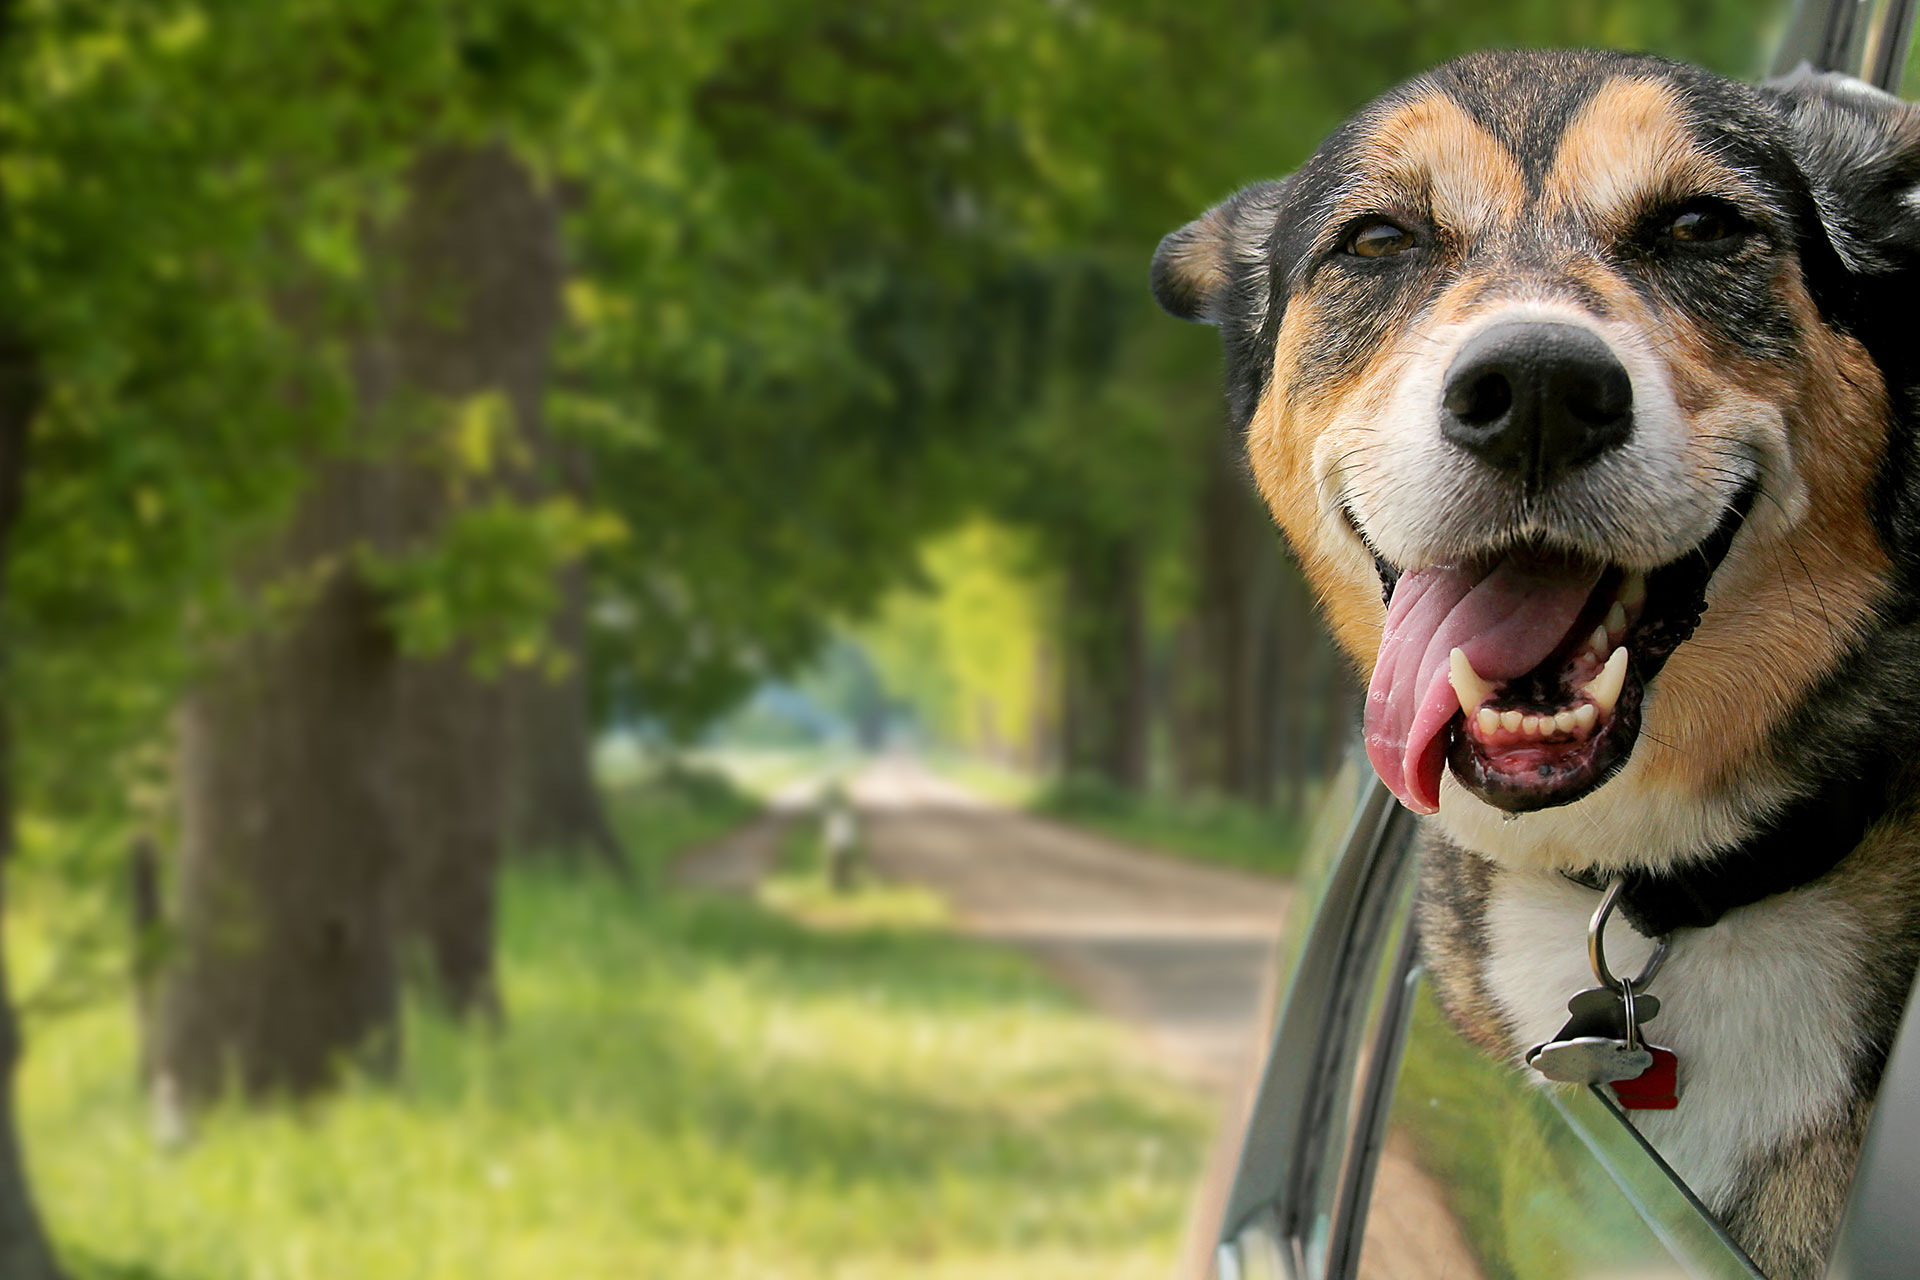 B.C. Aanhoudend Viool Kamperen met uw hond? Wij geven tips! | De Twee Bruggen